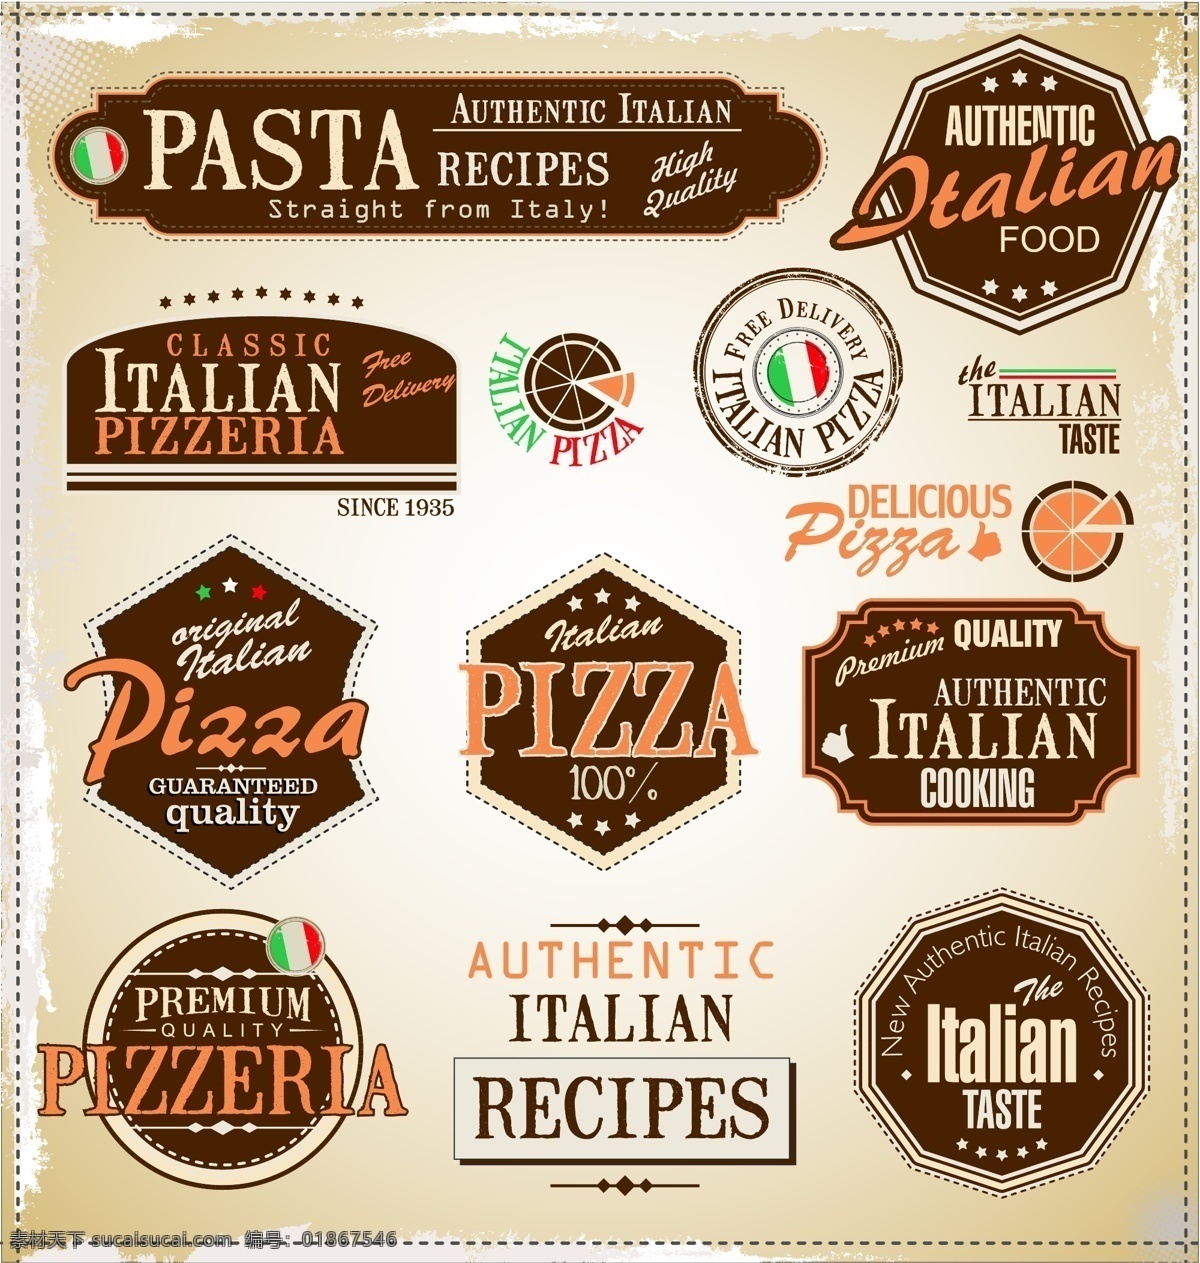 披萨 pizza 比萨 披萨图标 披萨设计 披萨logo 美食 西餐 时尚背景 绚丽背景 背景素材 背景图案 矢量背景 背景设计 抽象背景 抽象设计 卡通背景 矢量设计 卡通设计 艺术设计 餐饮美食 生活百科 矢量